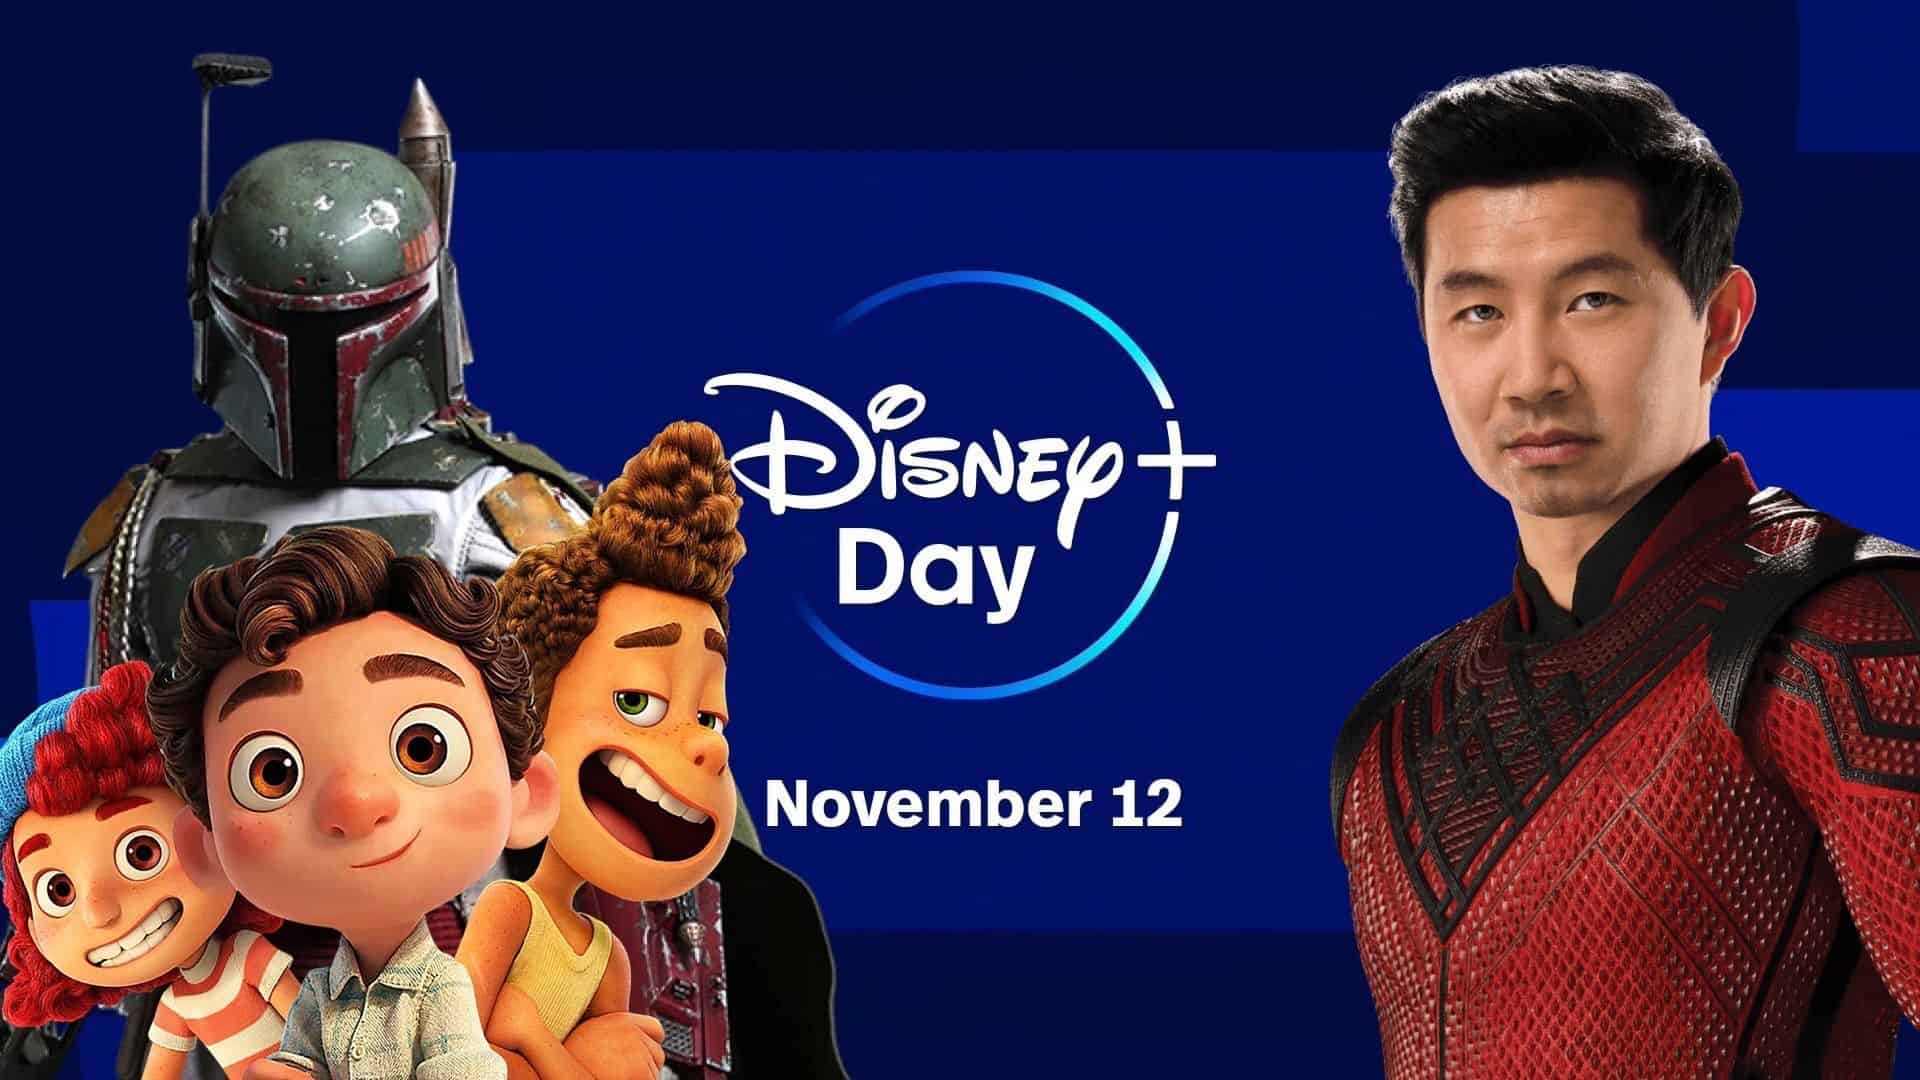 Disney+ Day offer